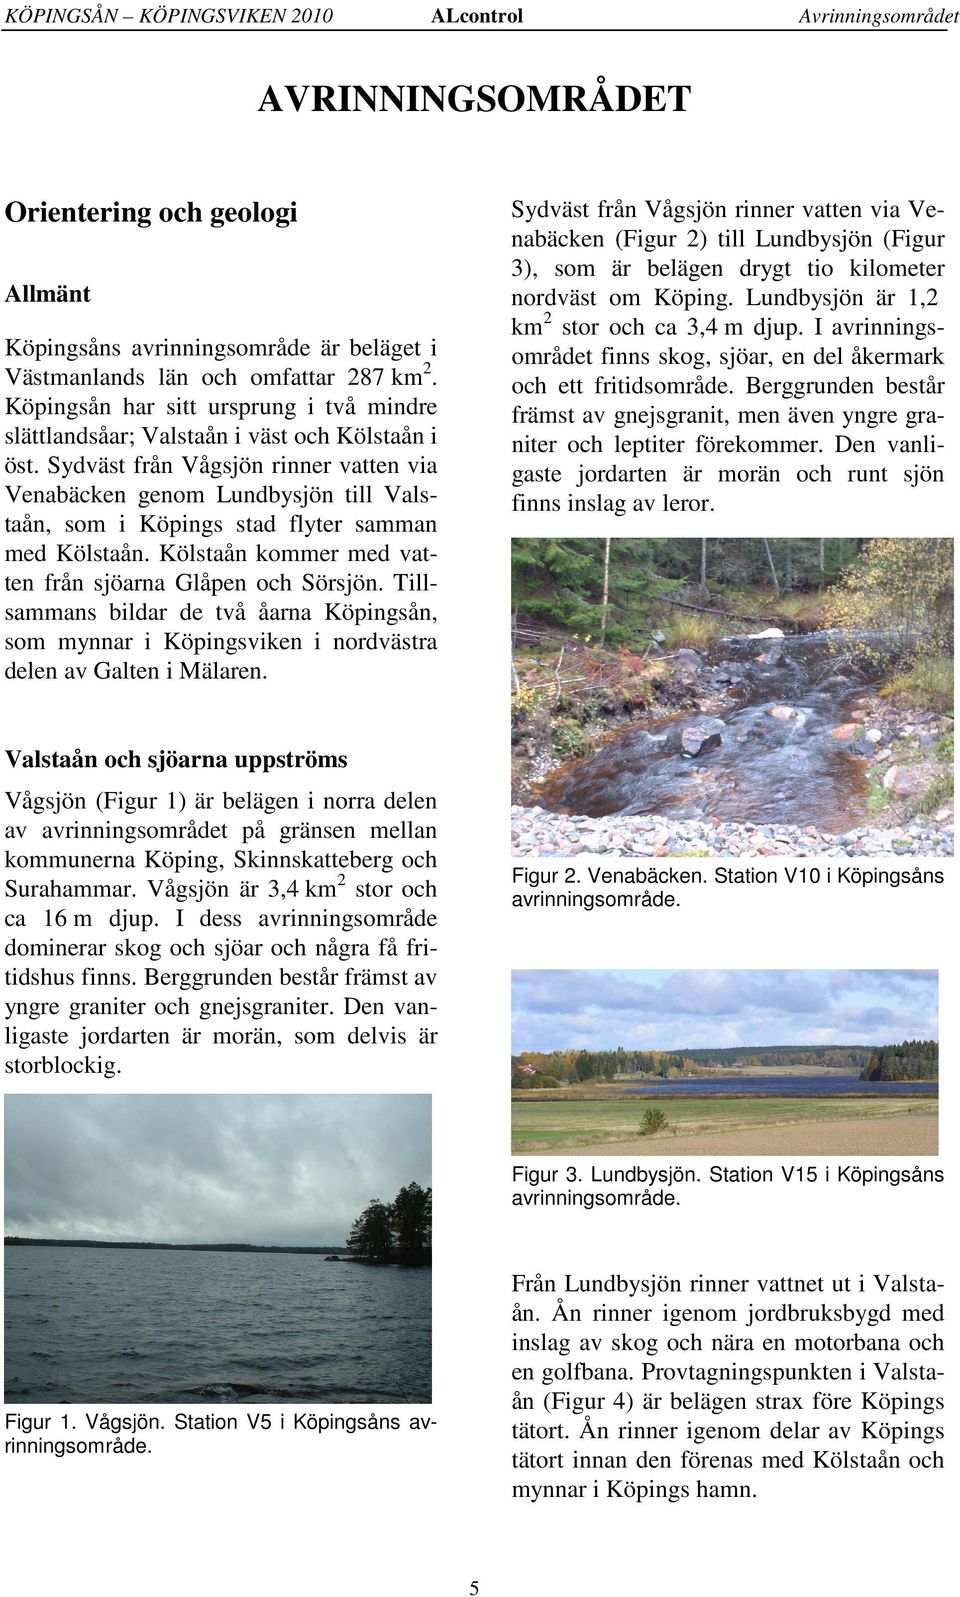 Sydväst från Vågsjön rinner vatten via Venabäcken genom Lundbysjön till Valstaån, som i Köpings stad flyter samman med Kölstaån. Kölstaån kommer med vatten från sjöarna Glåpen och Sörsjön.